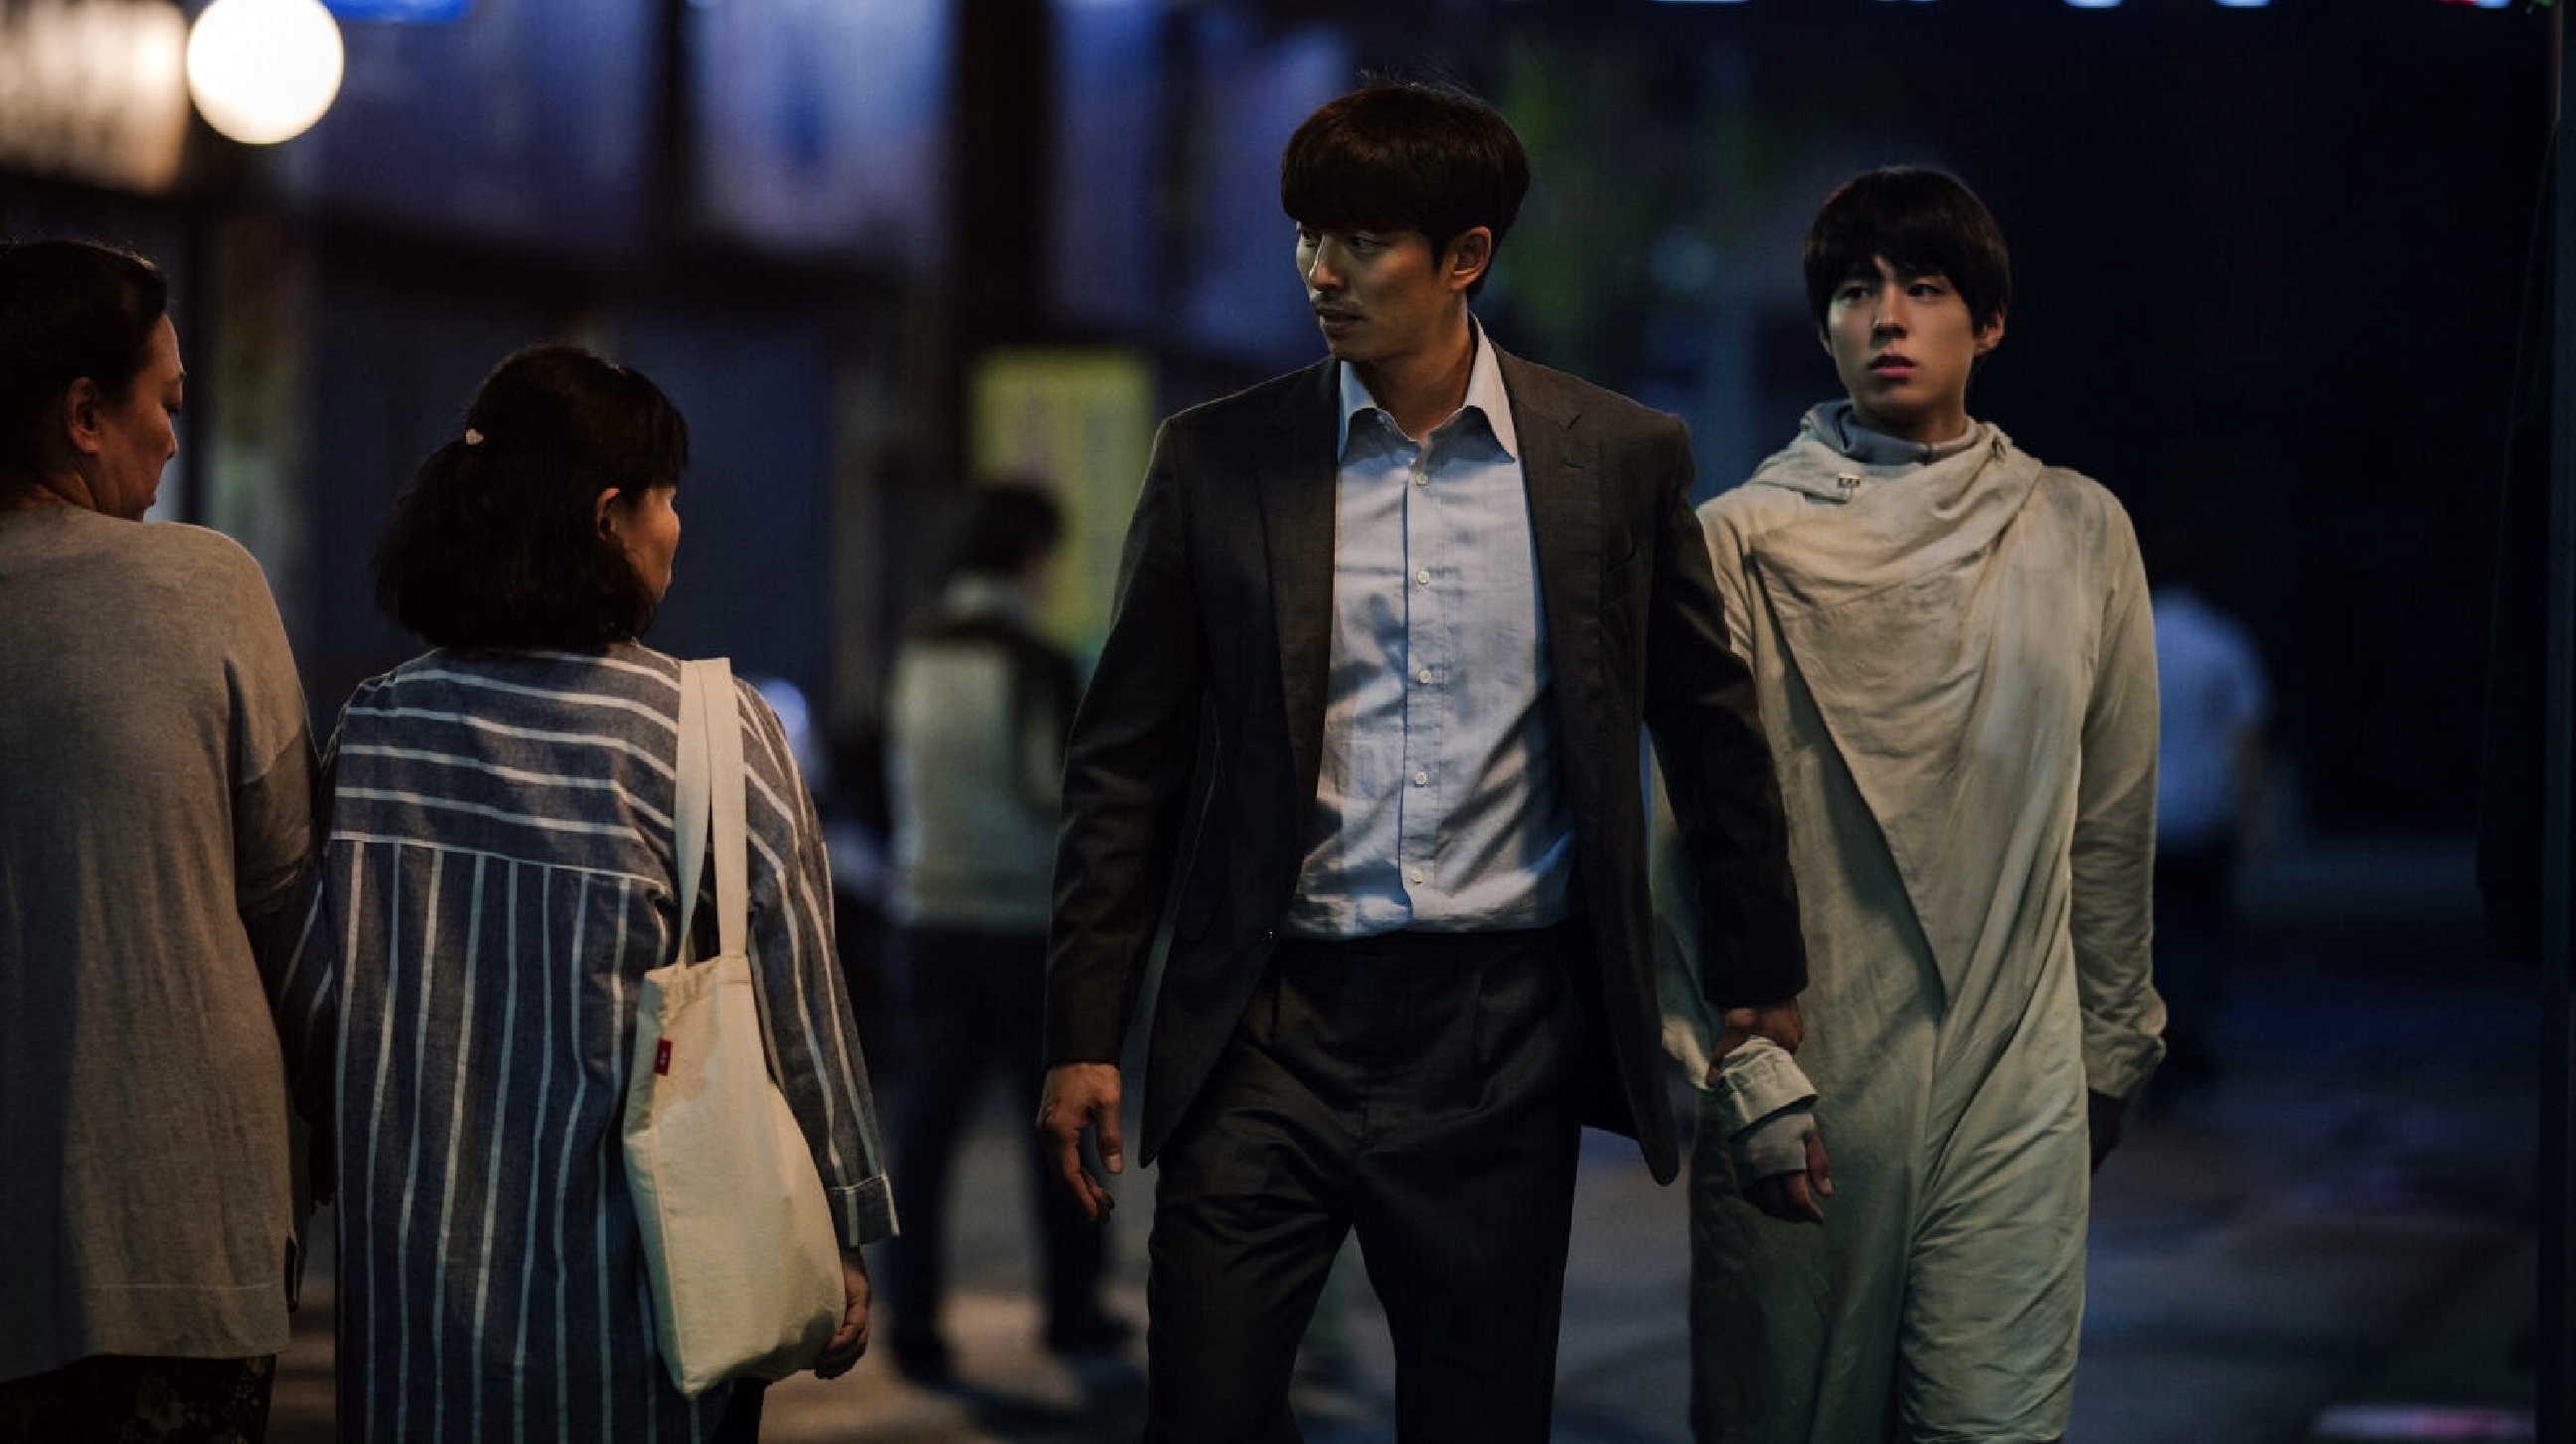 Film Seobok yang baru dirilis kini bisa ditonton di platform streaming